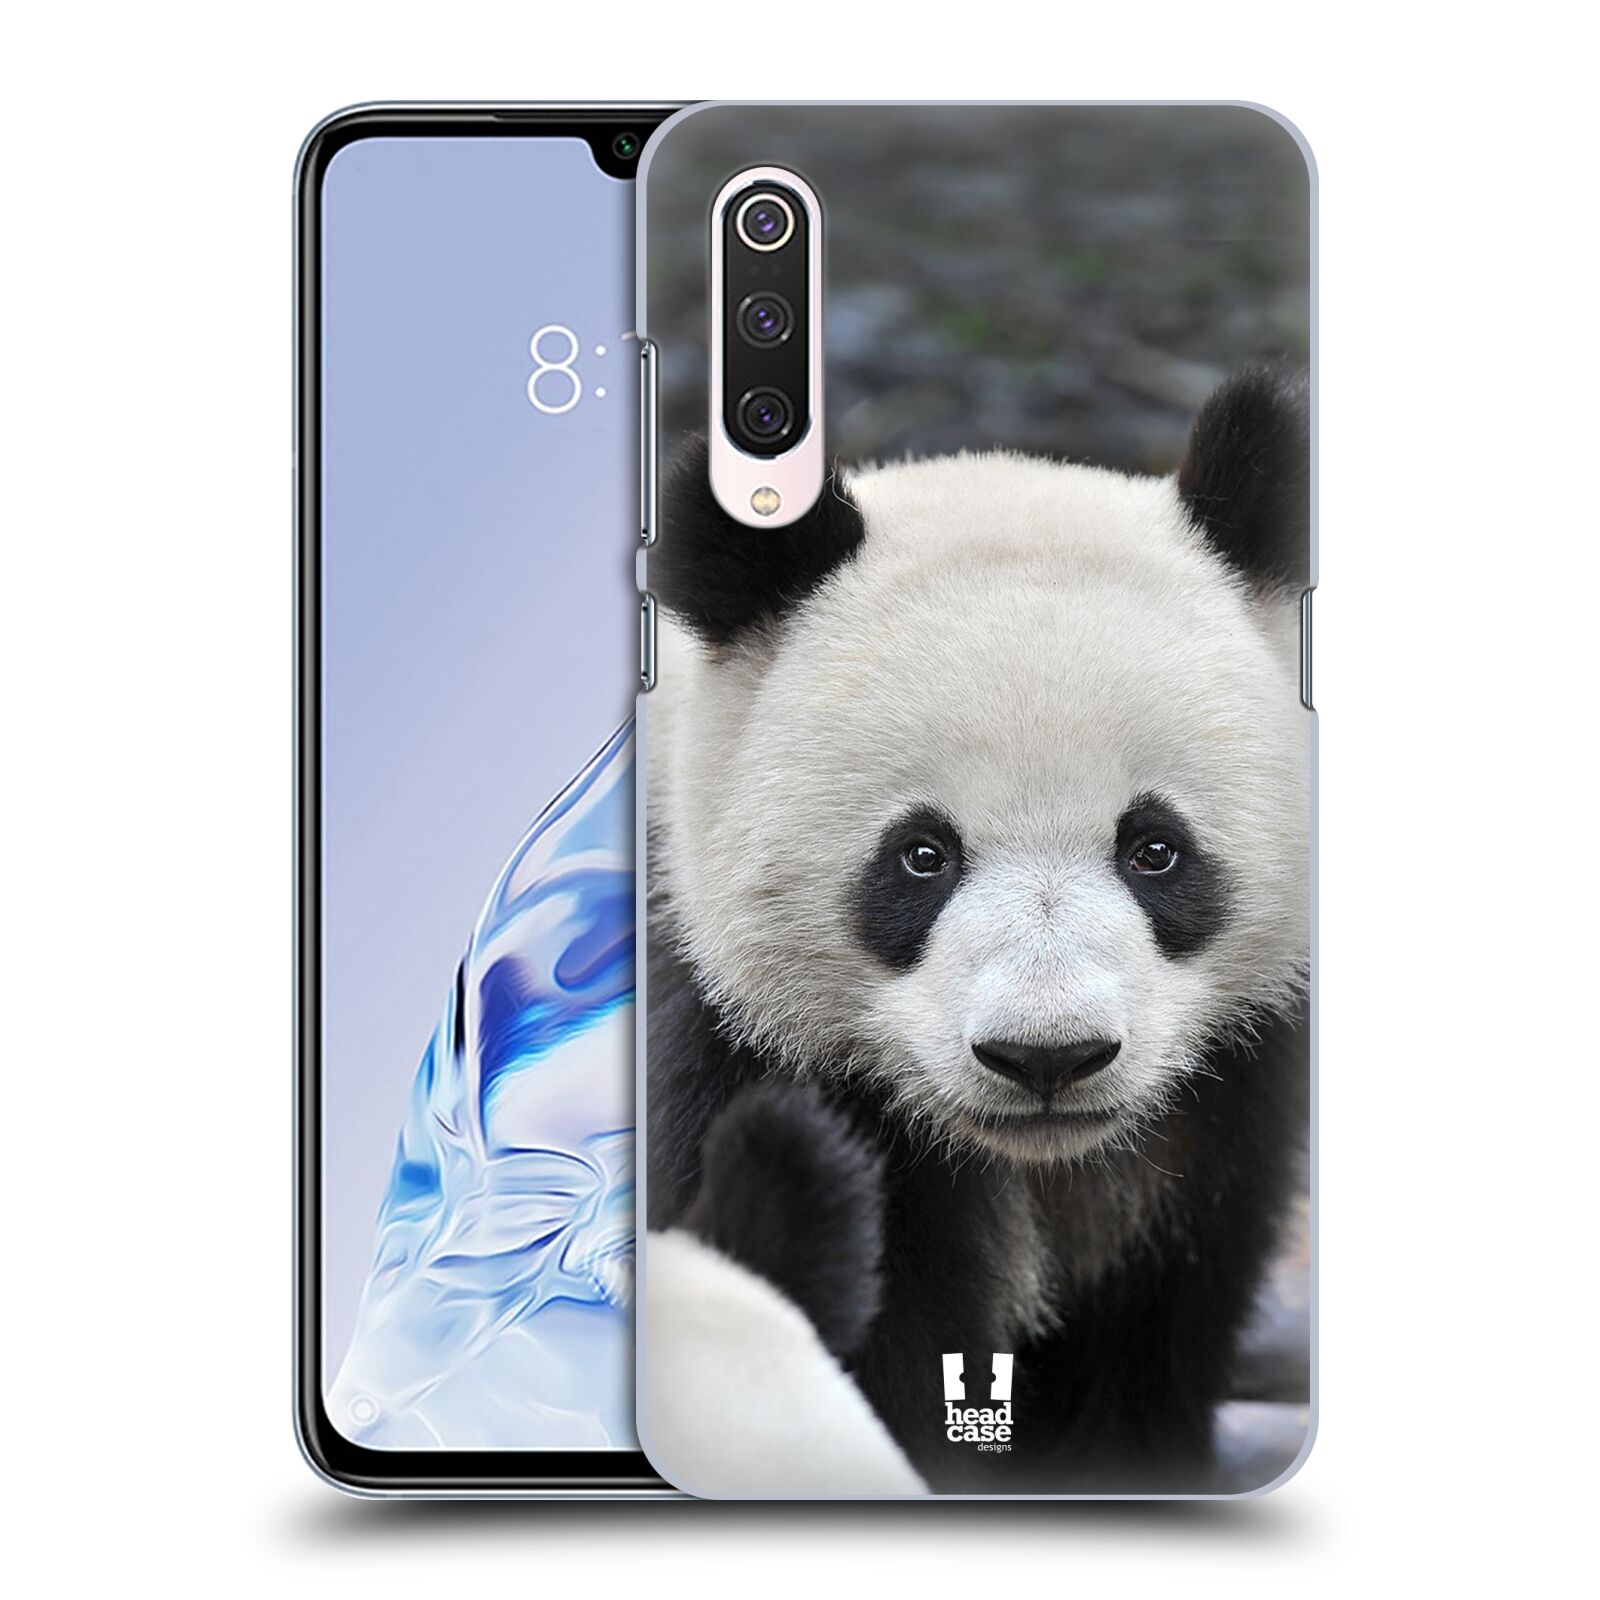 Zadní obal pro mobil Xiaomi Mi 9 PRO - HEAD CASE - Svět zvířat medvěd panda